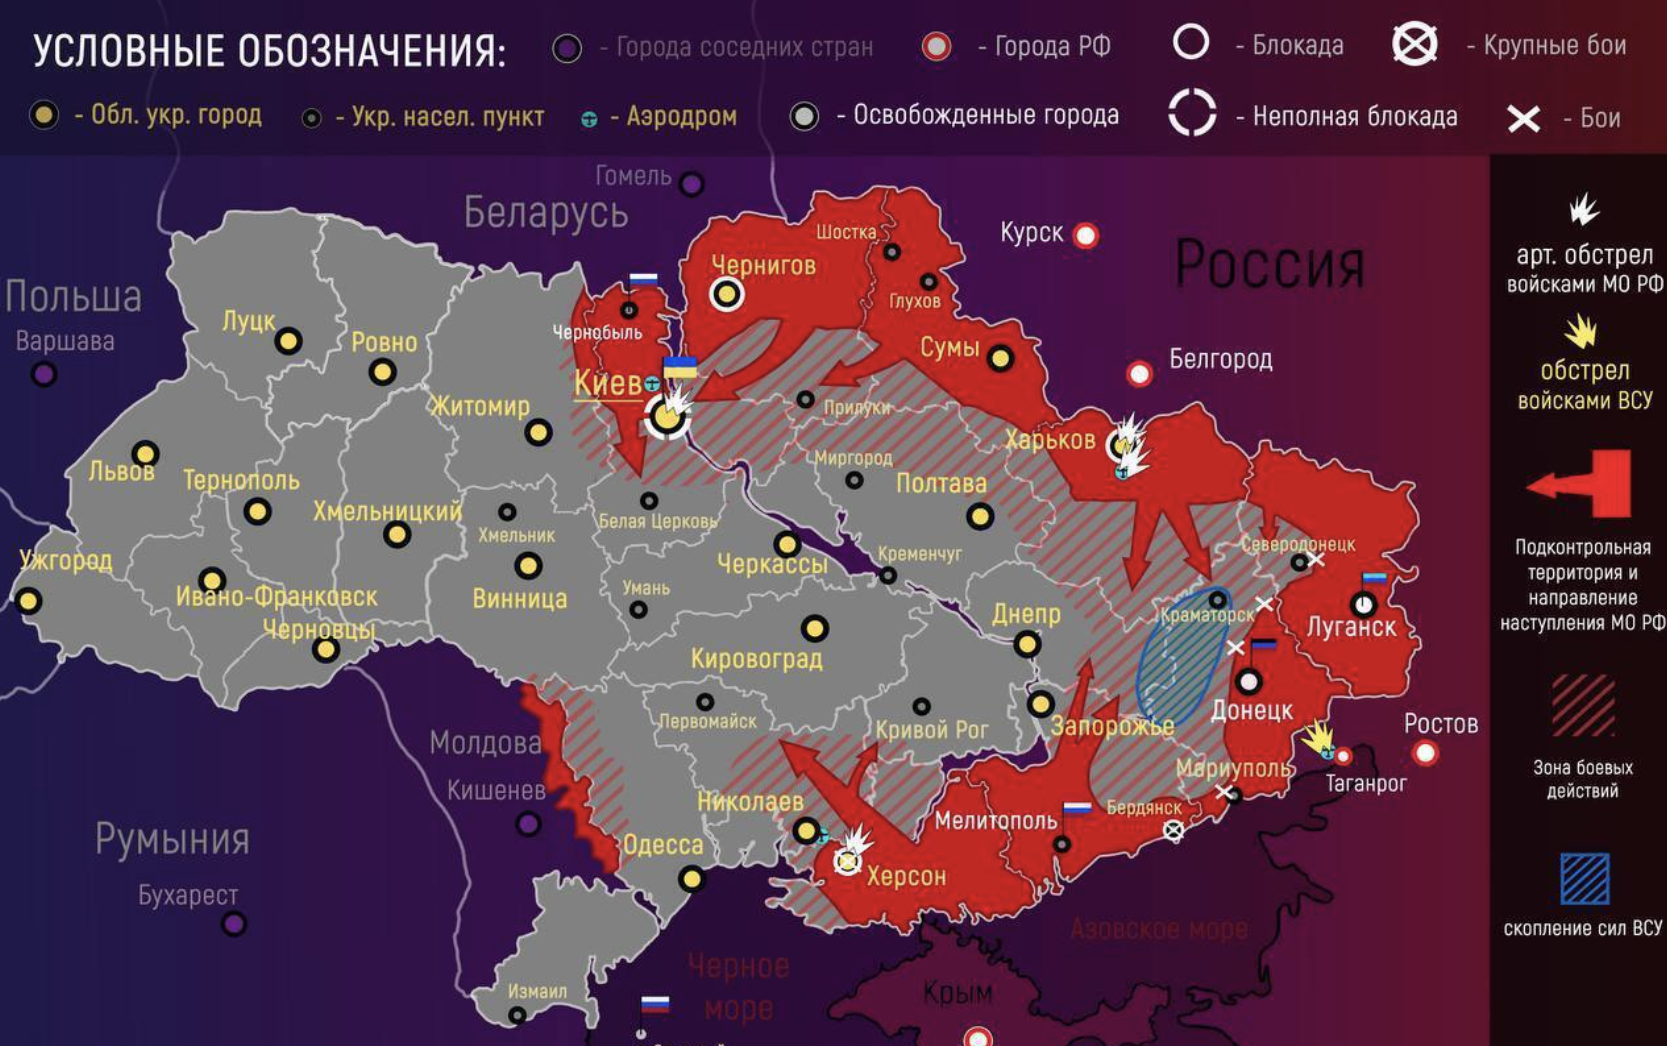 Карта боевых действий на украине ануфриенко. Карта Украины с военными действиями сейчас 2022 сегодня. Карта боевых действий на Украине на 10.04.2022. Украинская карта войны на Украине. Карта военных действий на Украине сегодня сейчас 04.04.2022.